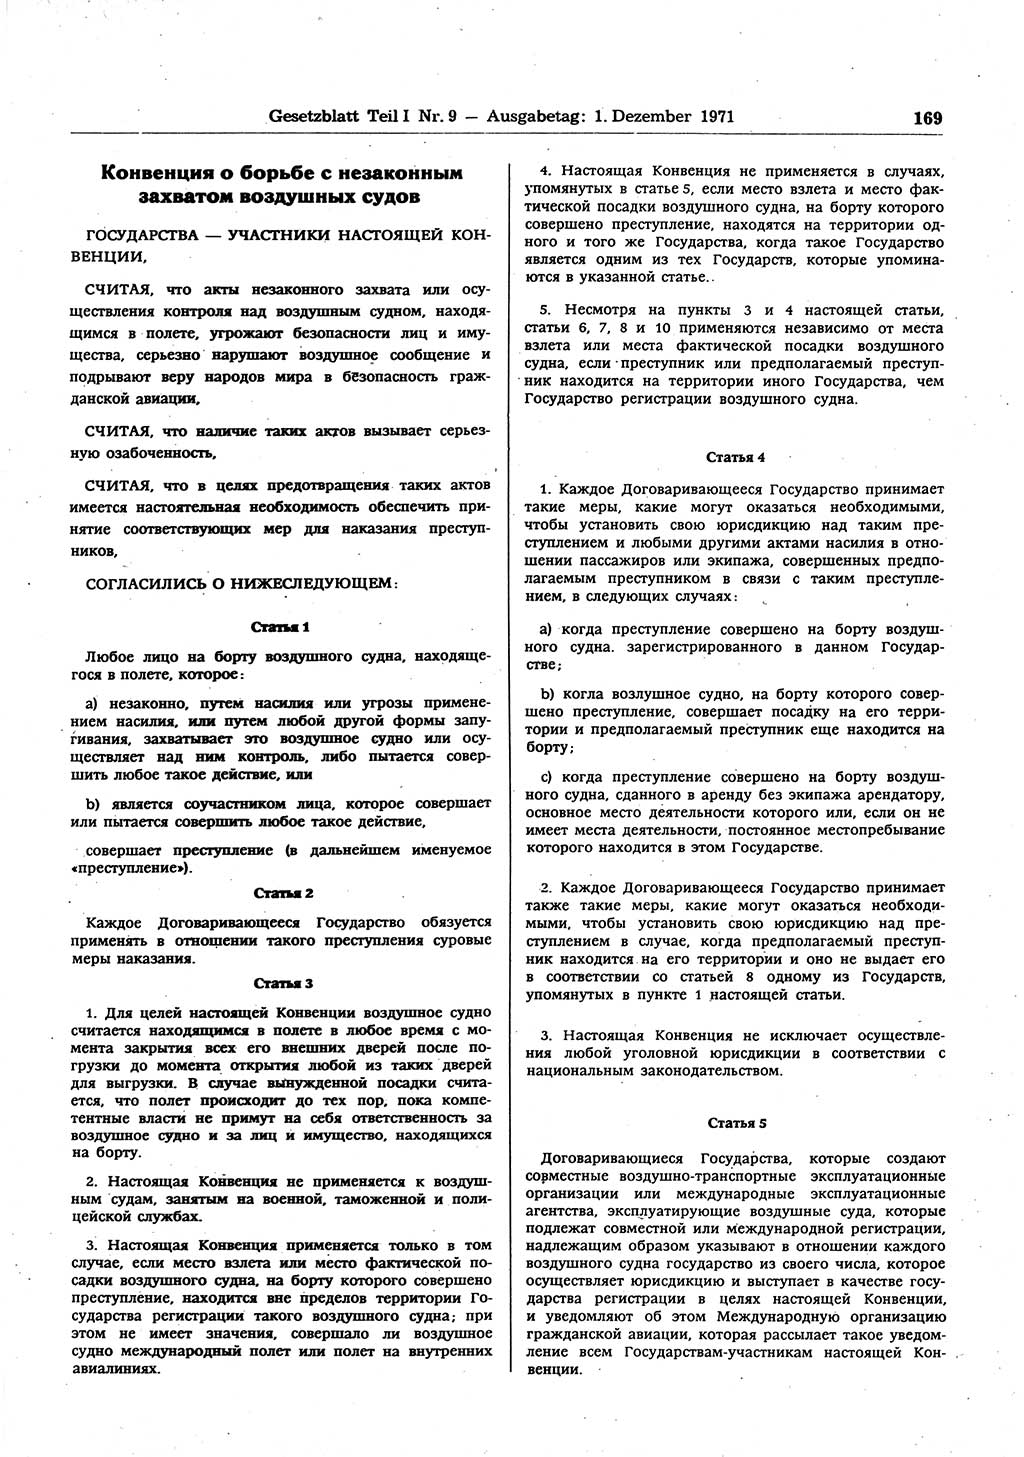 Gesetzblatt (GBl.) der Deutschen Demokratischen Republik (DDR) Teil Ⅰ 1971, Seite 169 (GBl. DDR Ⅰ 1971, S. 169)